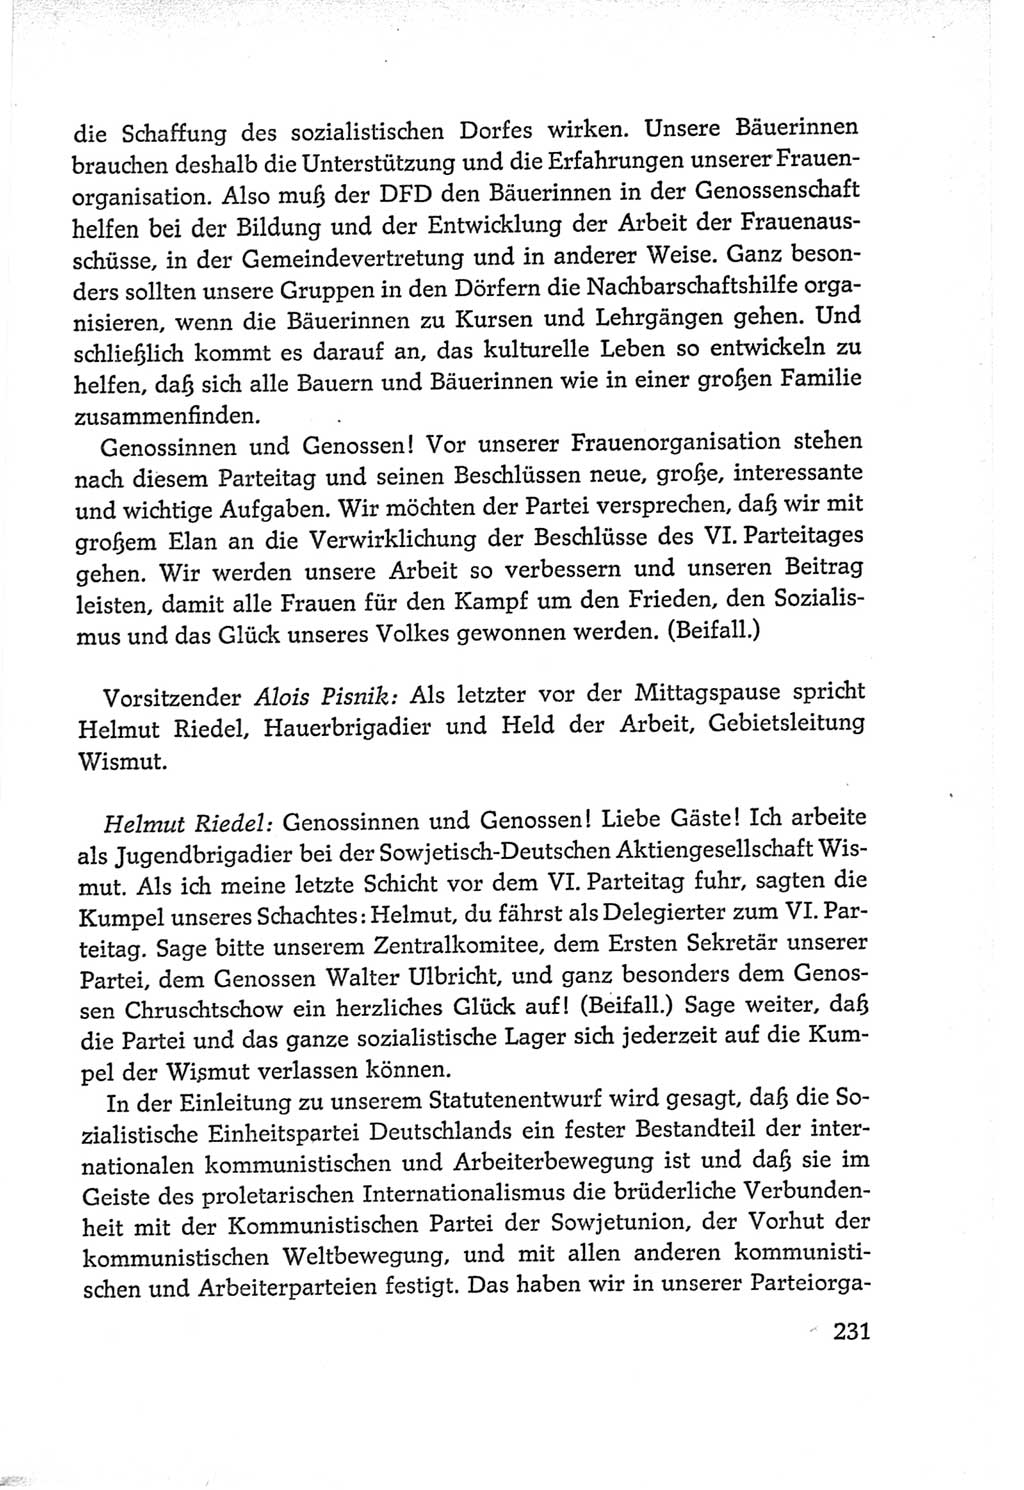 Protokoll der Verhandlungen des Ⅵ. Parteitages der Sozialistischen Einheitspartei Deutschlands (SED) [Deutsche Demokratische Republik (DDR)] 1963, Band Ⅱ, Seite 231 (Prot. Verh. Ⅵ. PT SED DDR 1963, Bd. Ⅱ, S. 231)